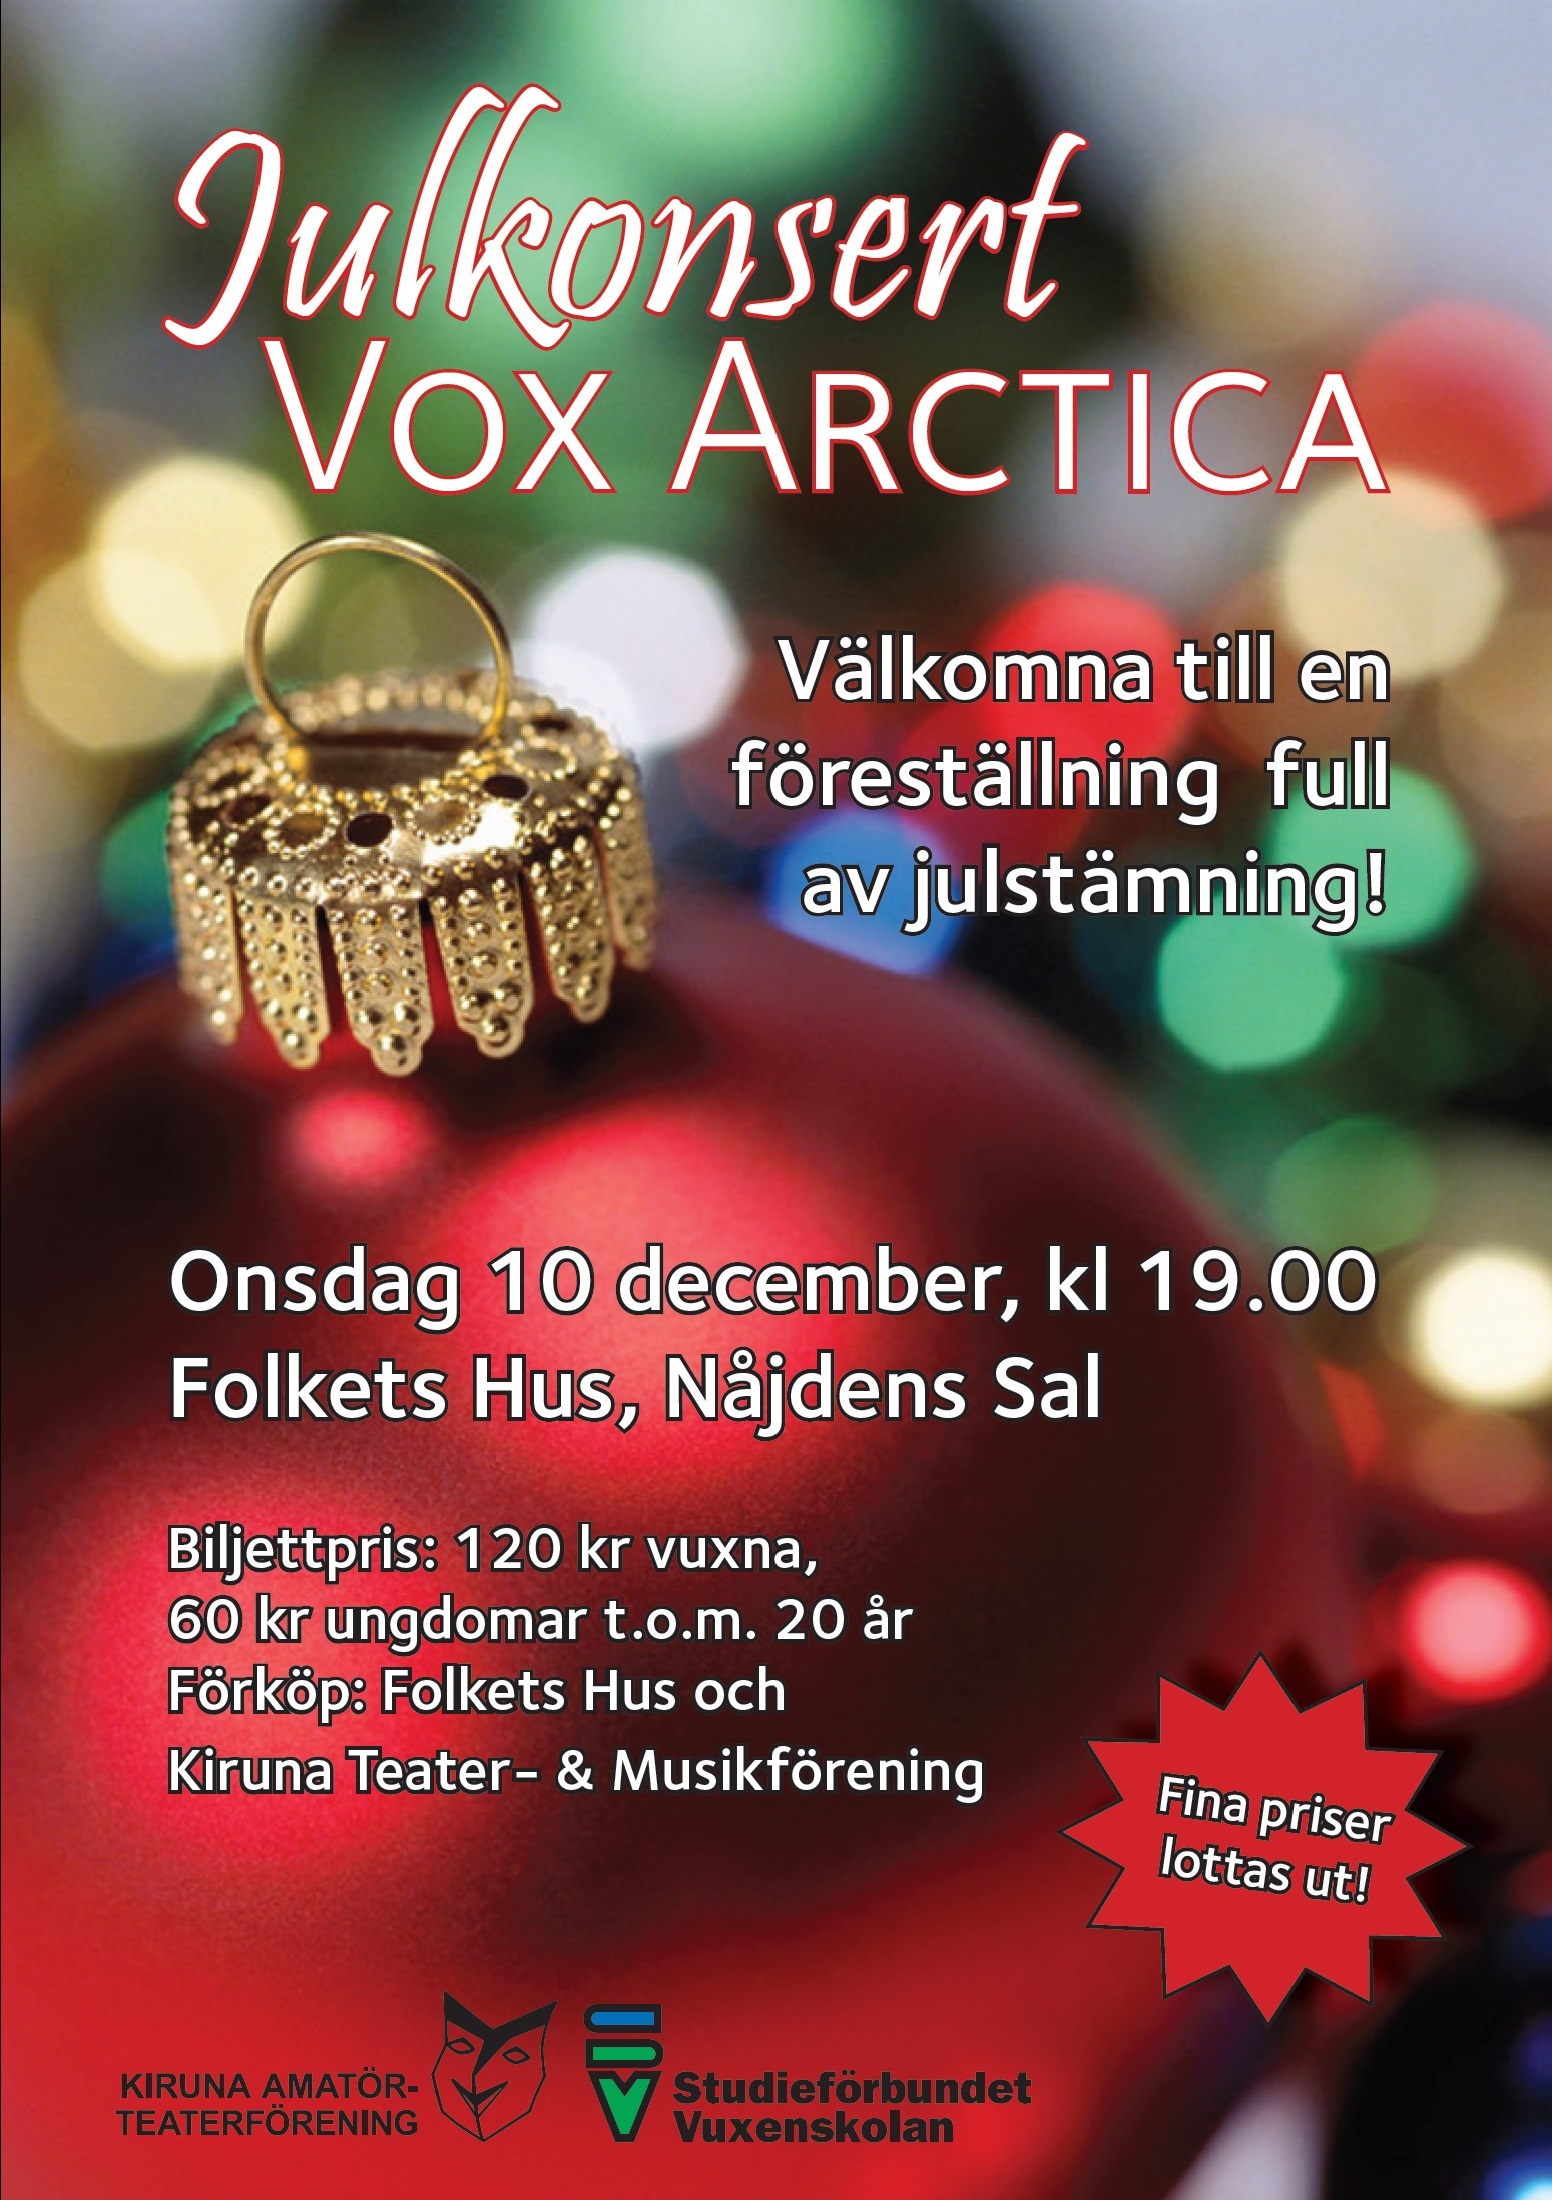 Affisch fr Vox Arctica Julkonsert p Musikfrestllning i Kiruna p Kiruna Folkets Hus